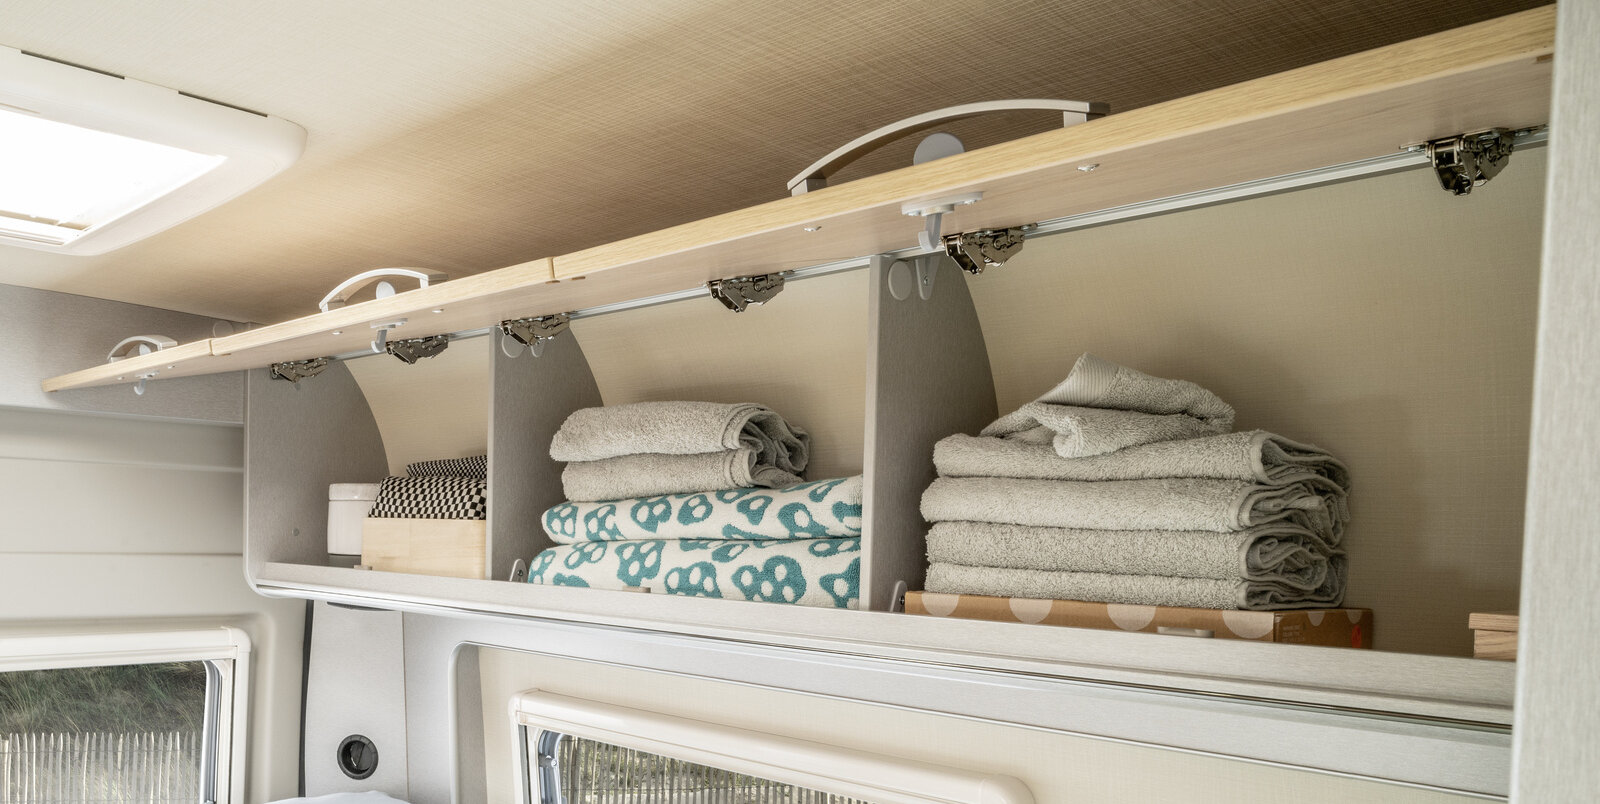 Pensili aperti sopra il letto posteriore che contengono asciugamani ed altri tessili; Free 540 HYMER